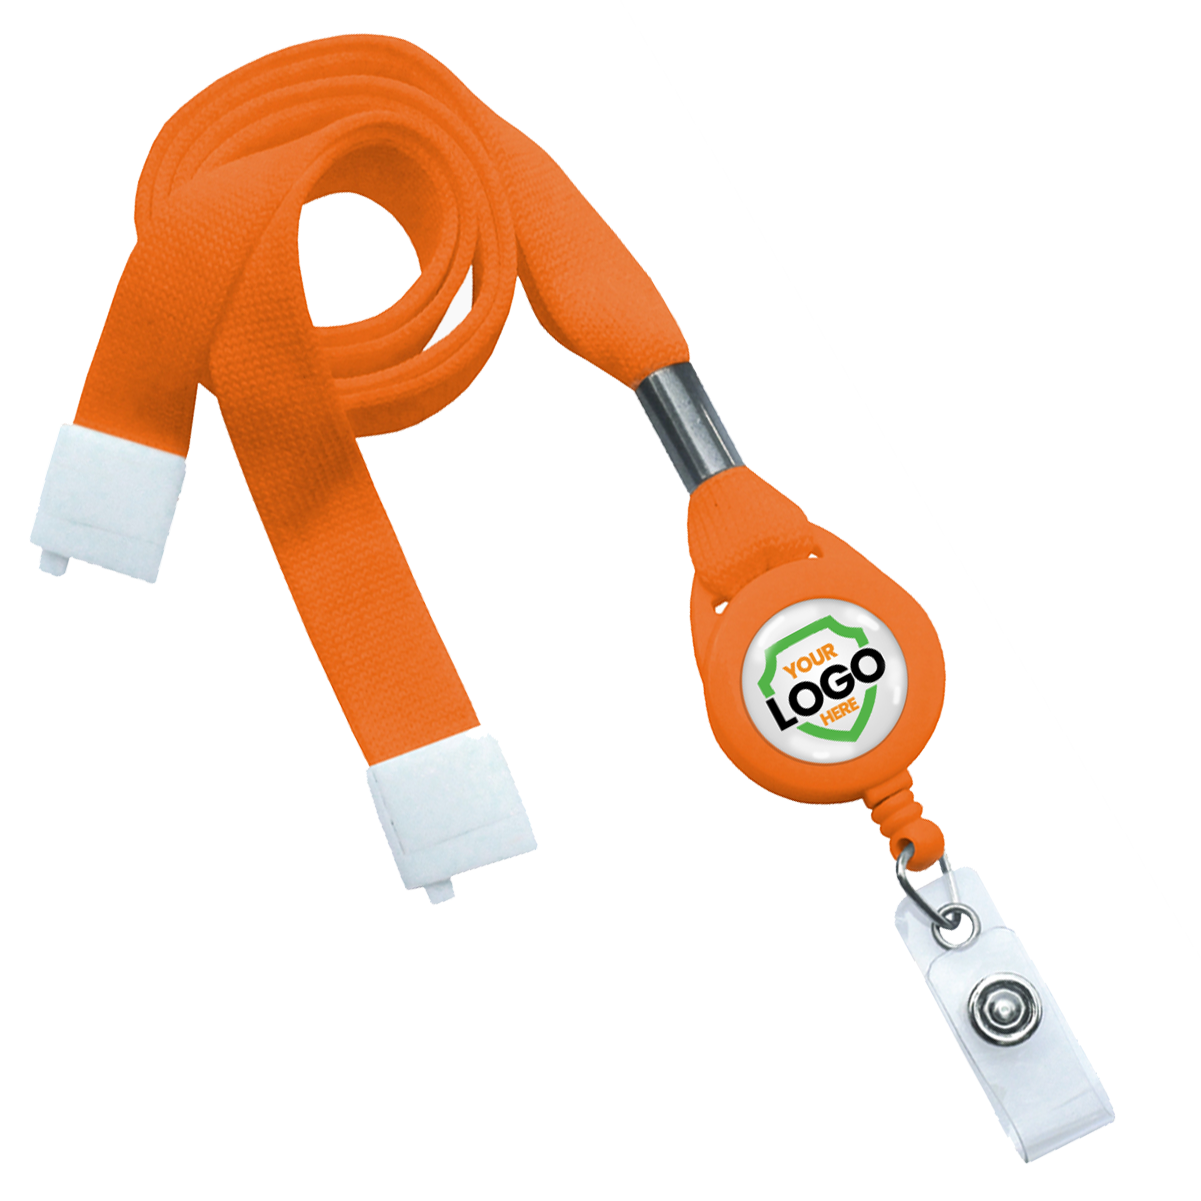 custom orange breakaway lanyard and badge reel combo with your logo added